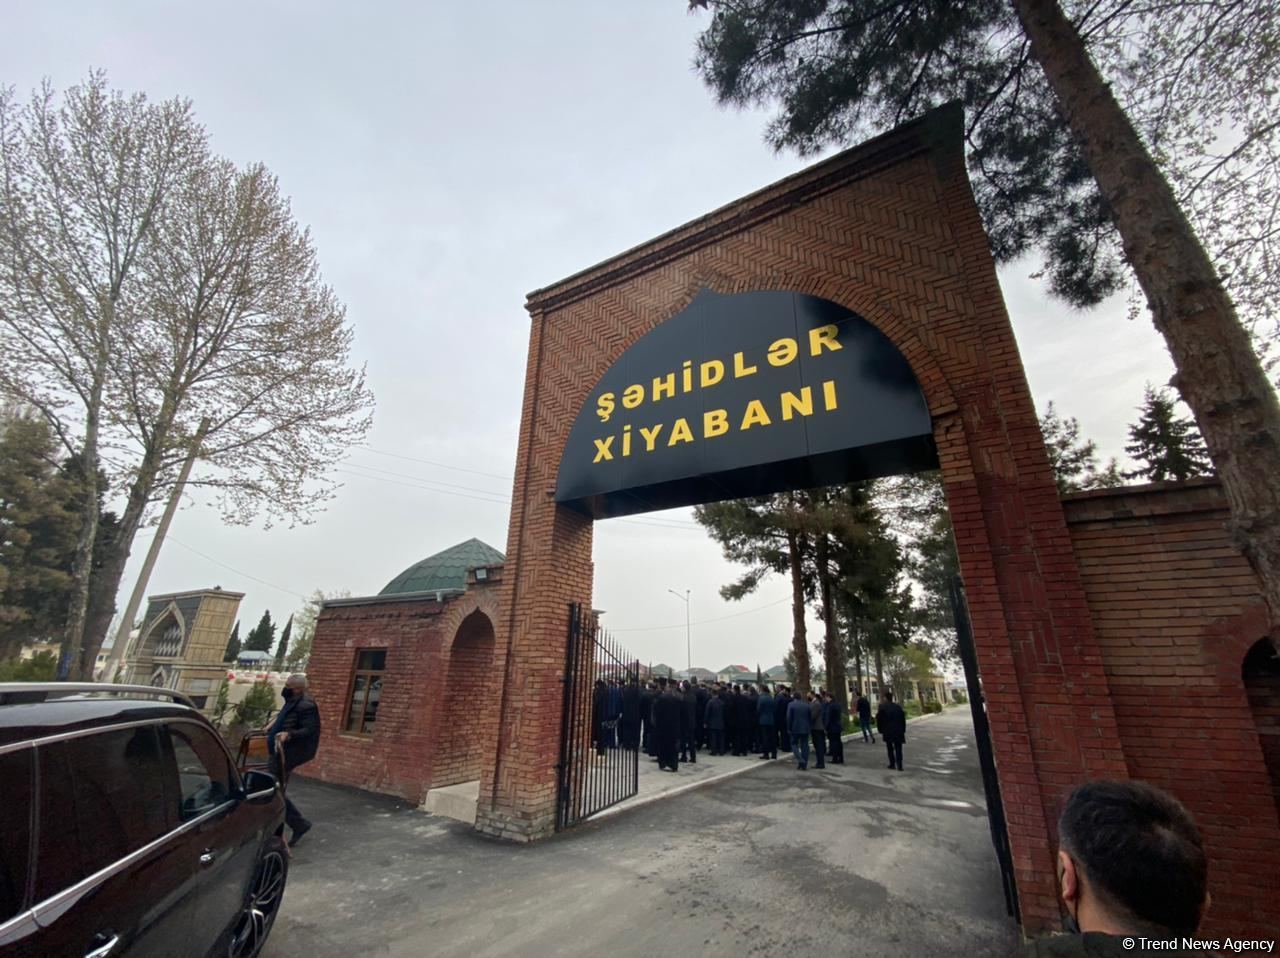 Начался визит глав религиозных общин Азербайджана в Агдам (ФОТО)